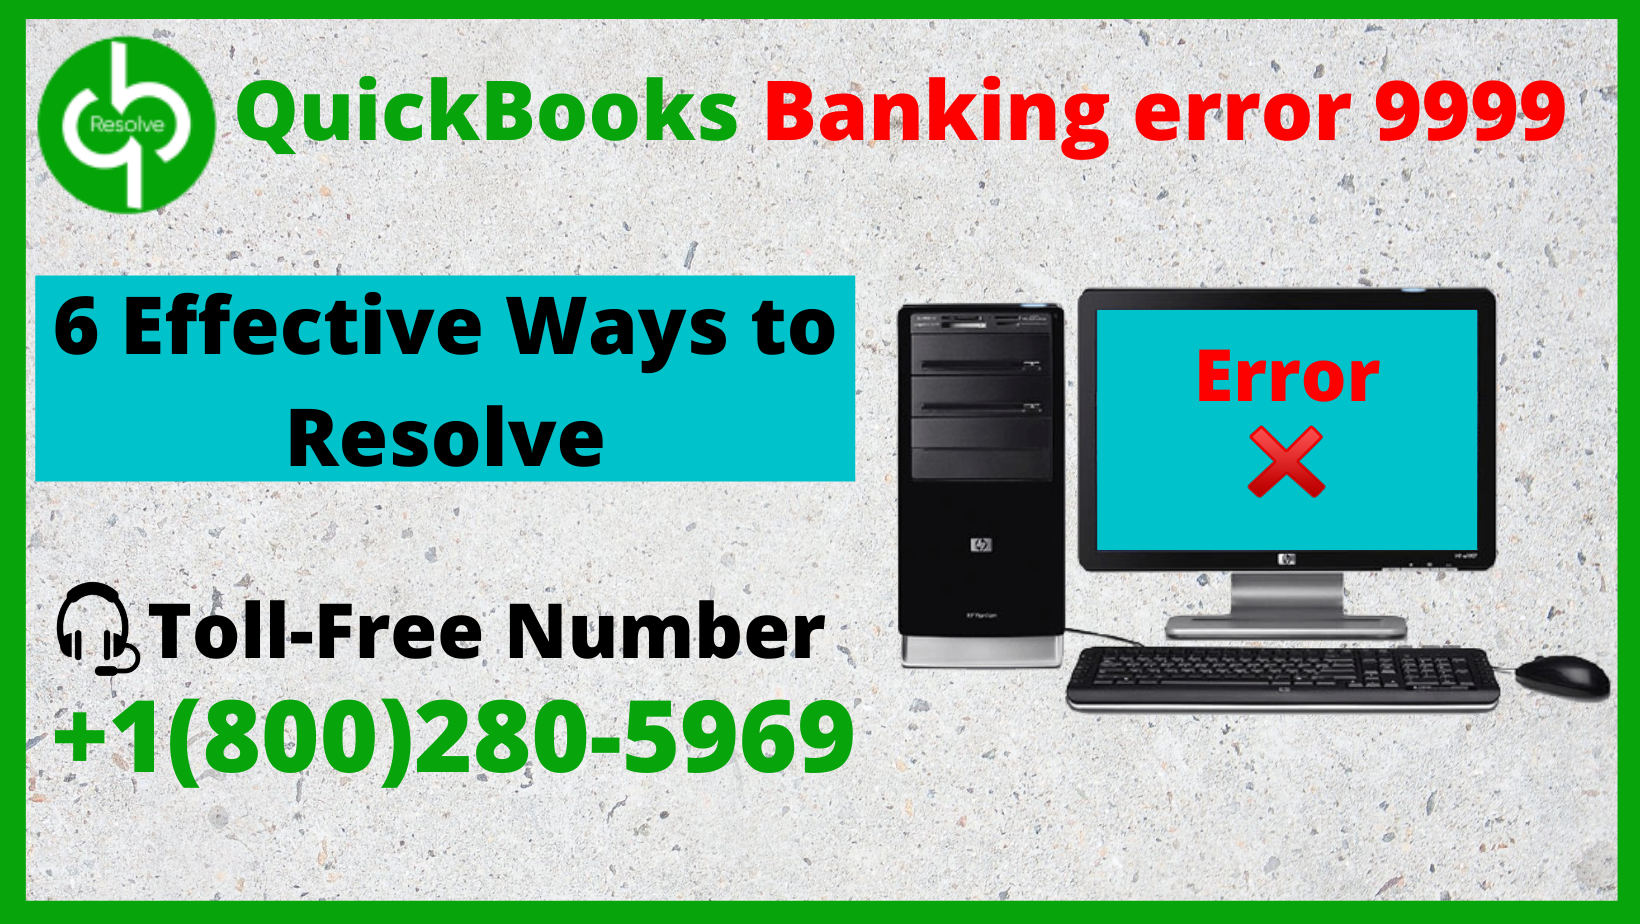 6 Effective Ways to Resolve QuickBooks Banking error 9999